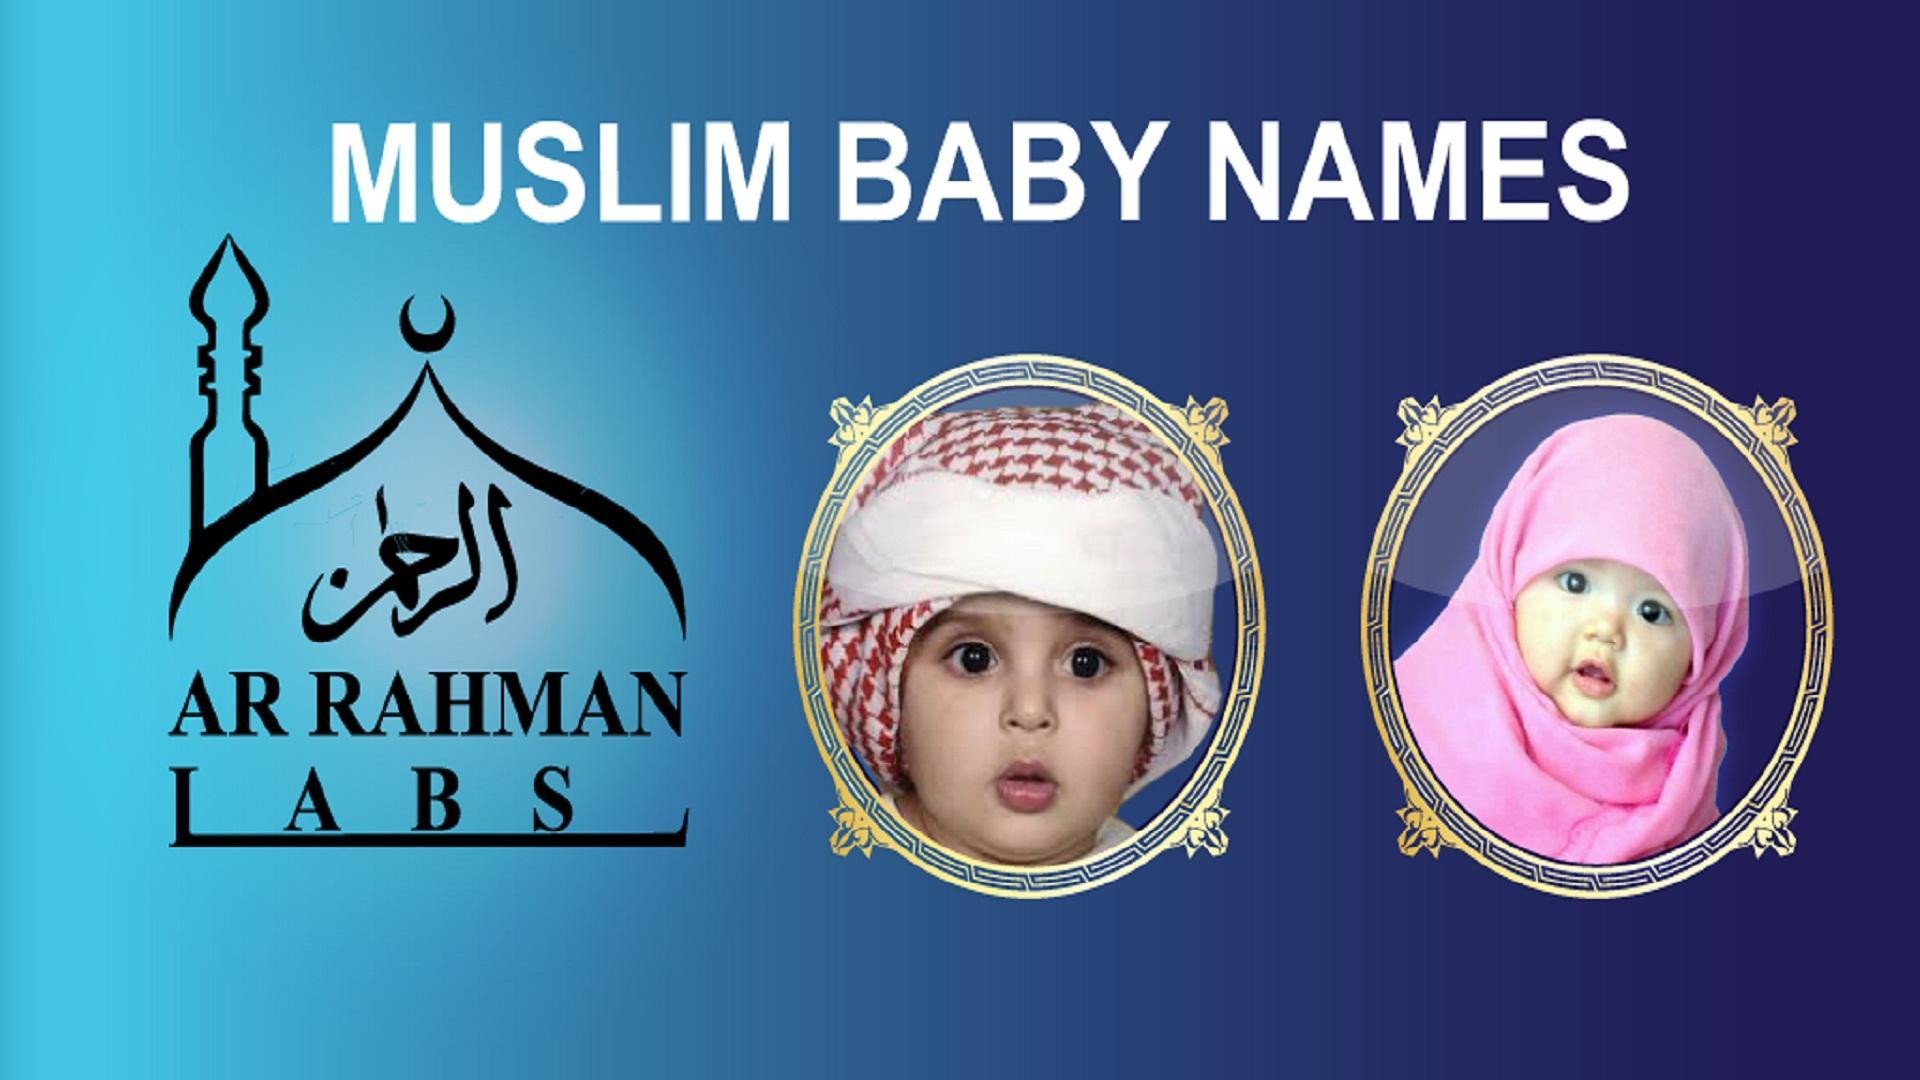 Мужское имя мусульманское для мальчика современное. Мусульманские имена. Самое красивое имя мусульманское. Мусульманские имена для мальчиков. Красивые мусульманские имена для девочек и мальчиков.